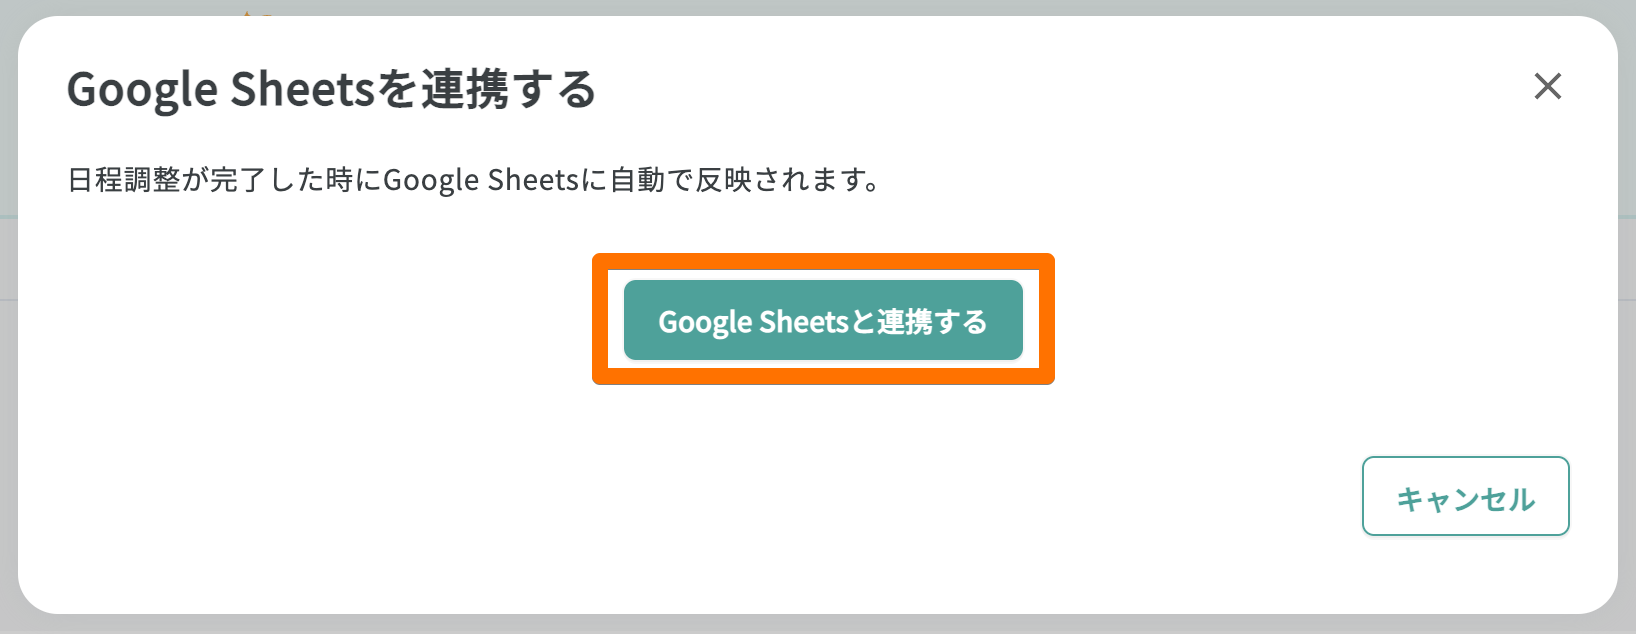 google_sheets6.png